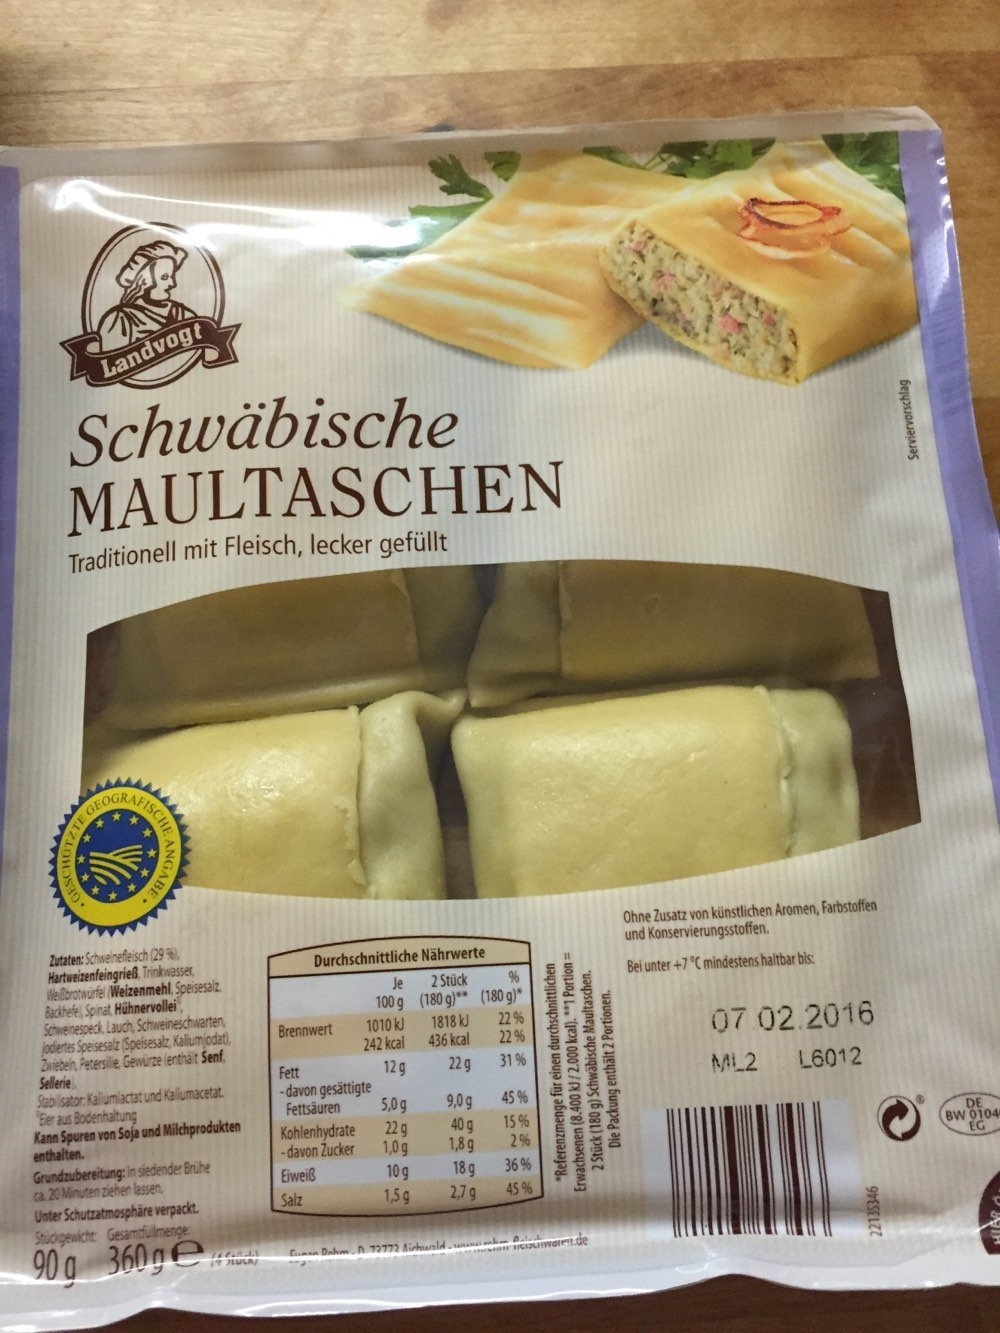 Maultaschen original schwäbisch - Product - de